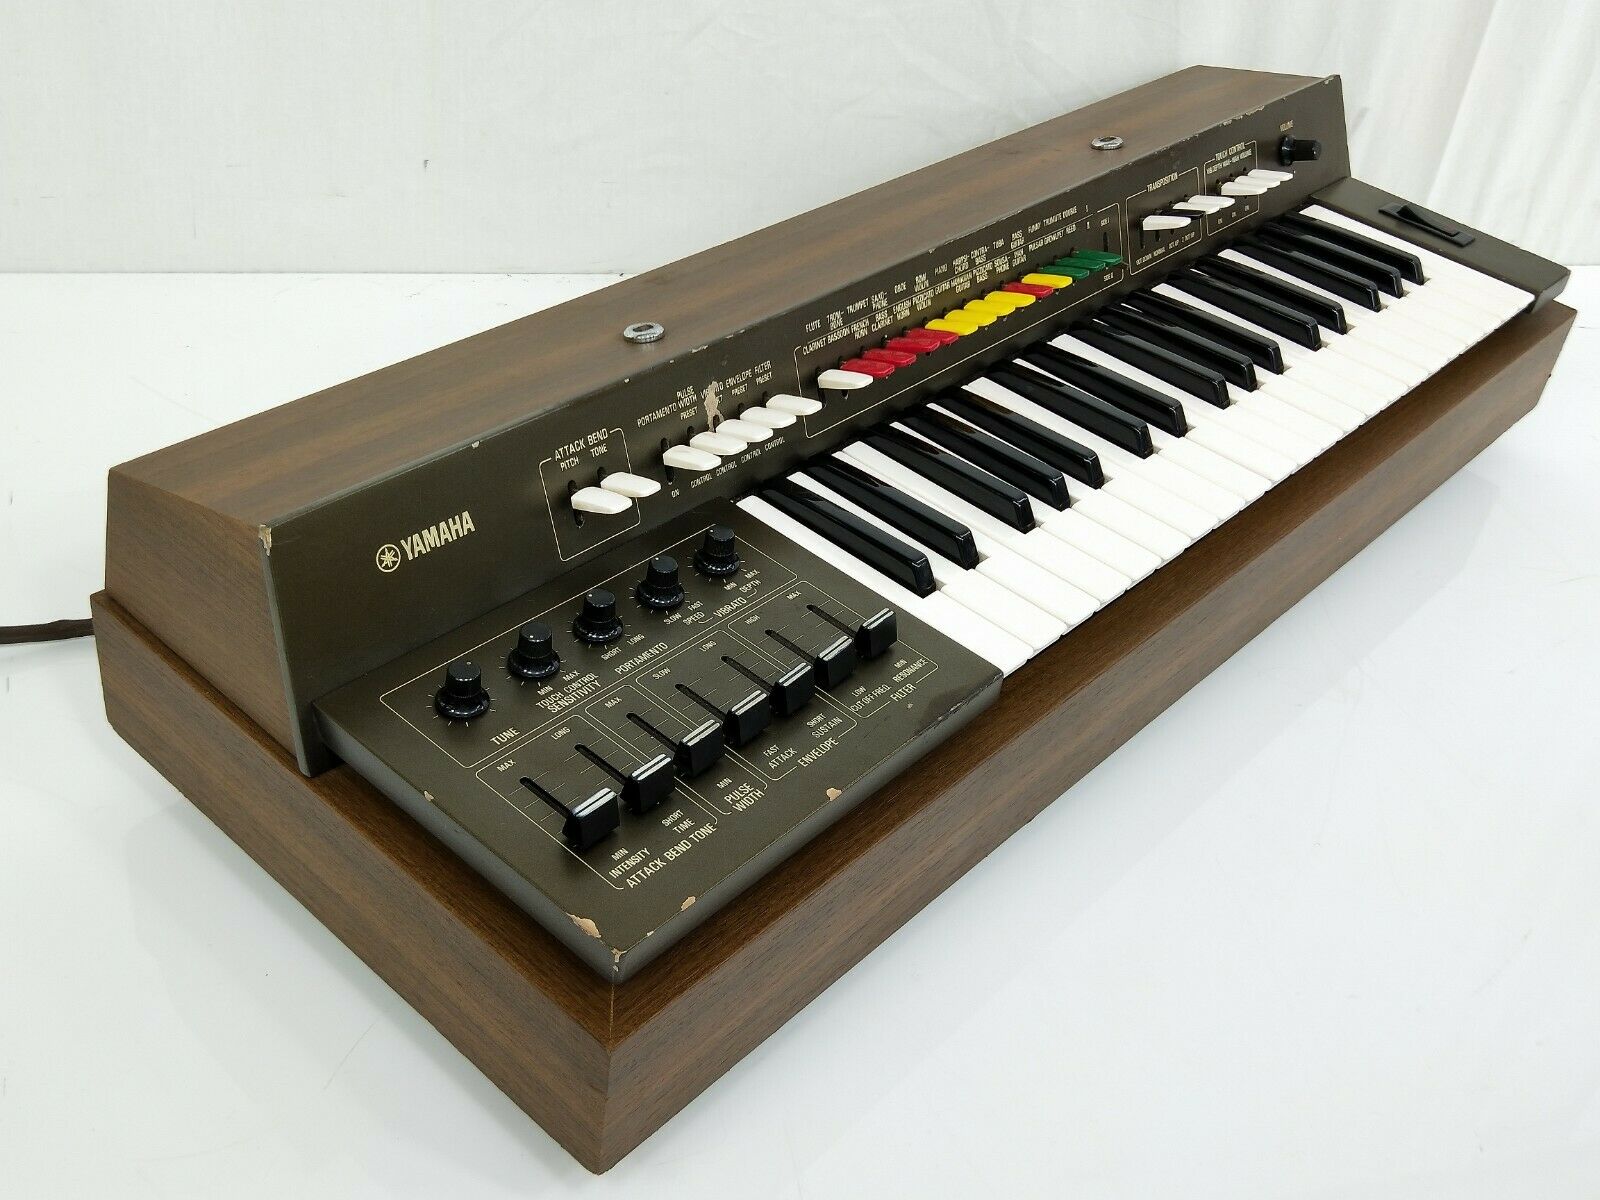 MATRIXSYNTH: Vintage Yamaha SY-1 Monophonic Analog Synthesizer